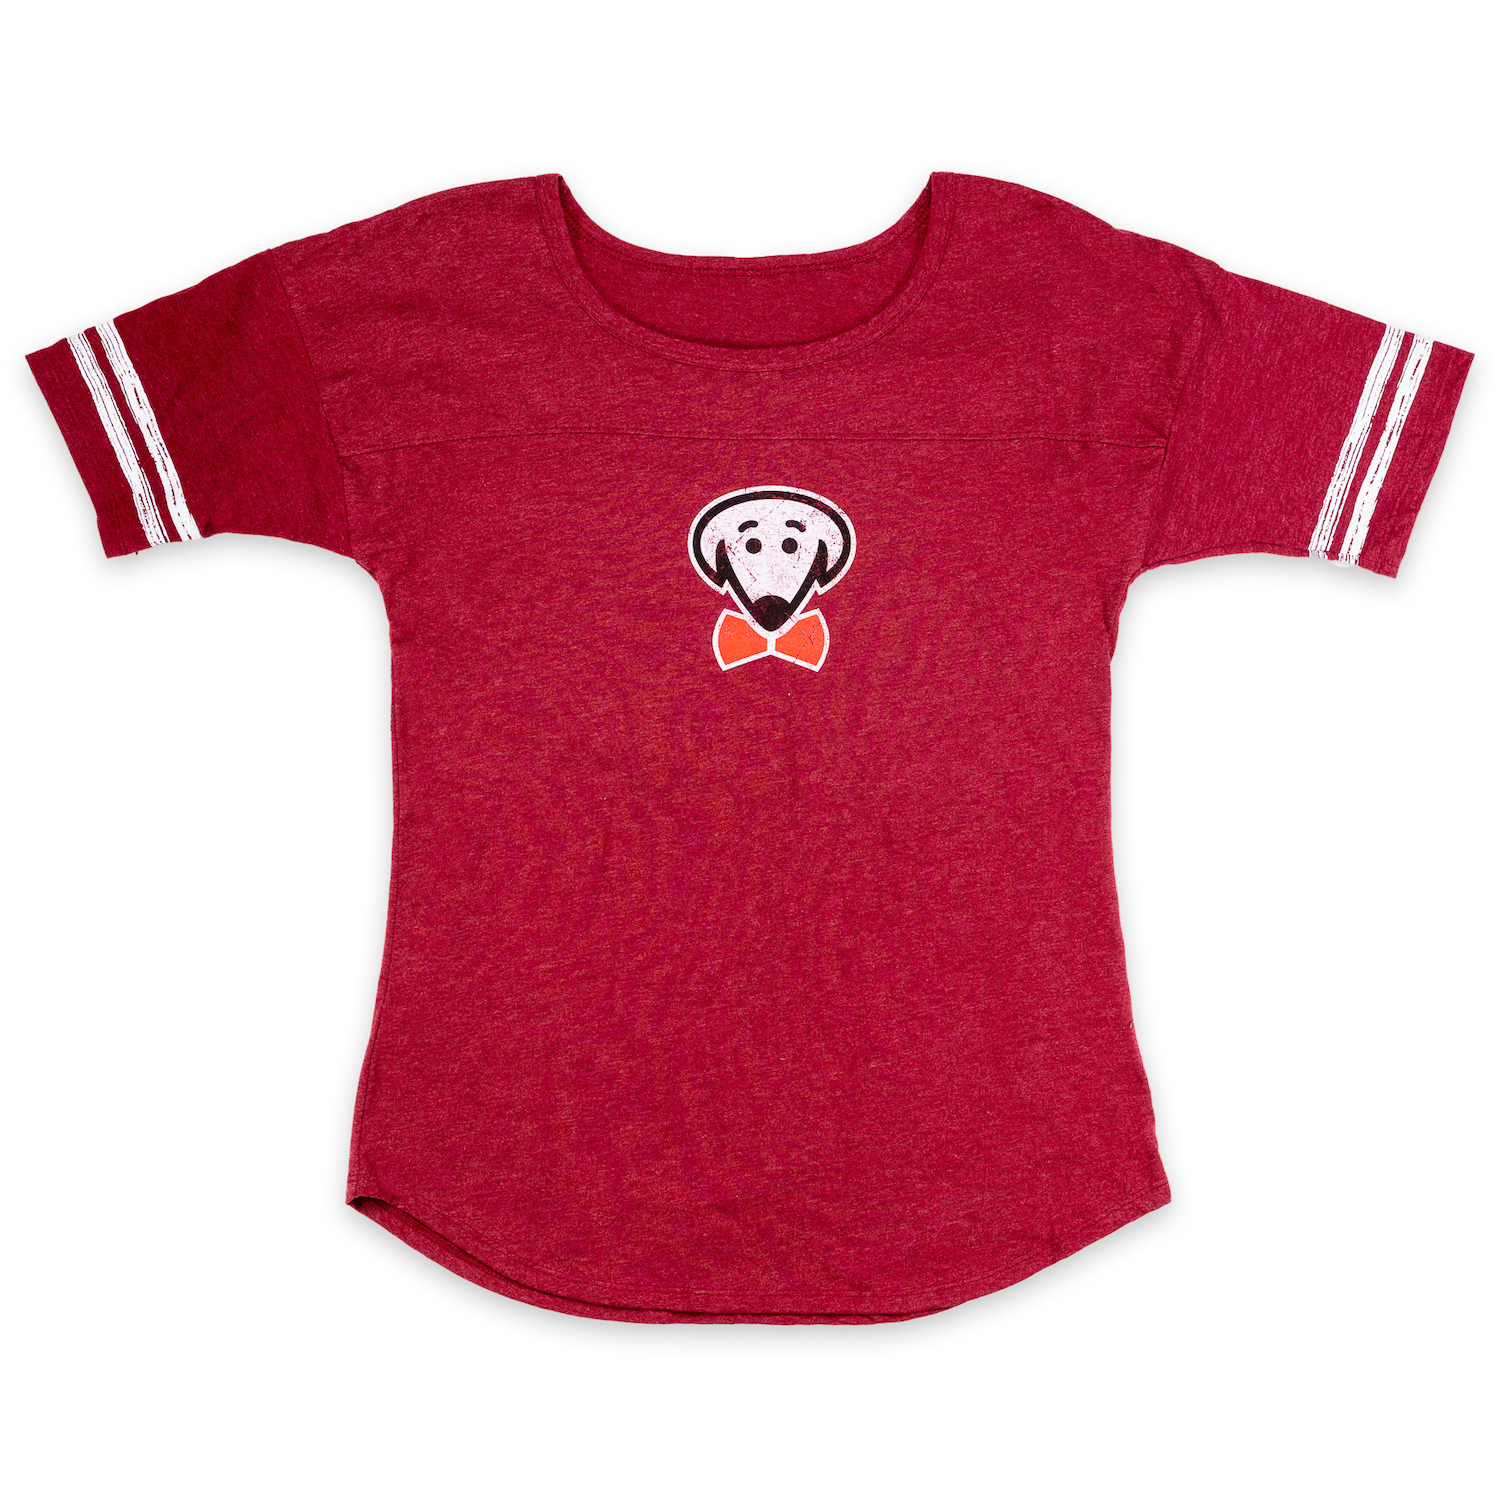 Beau Tyler - Thunderbird shirt front red